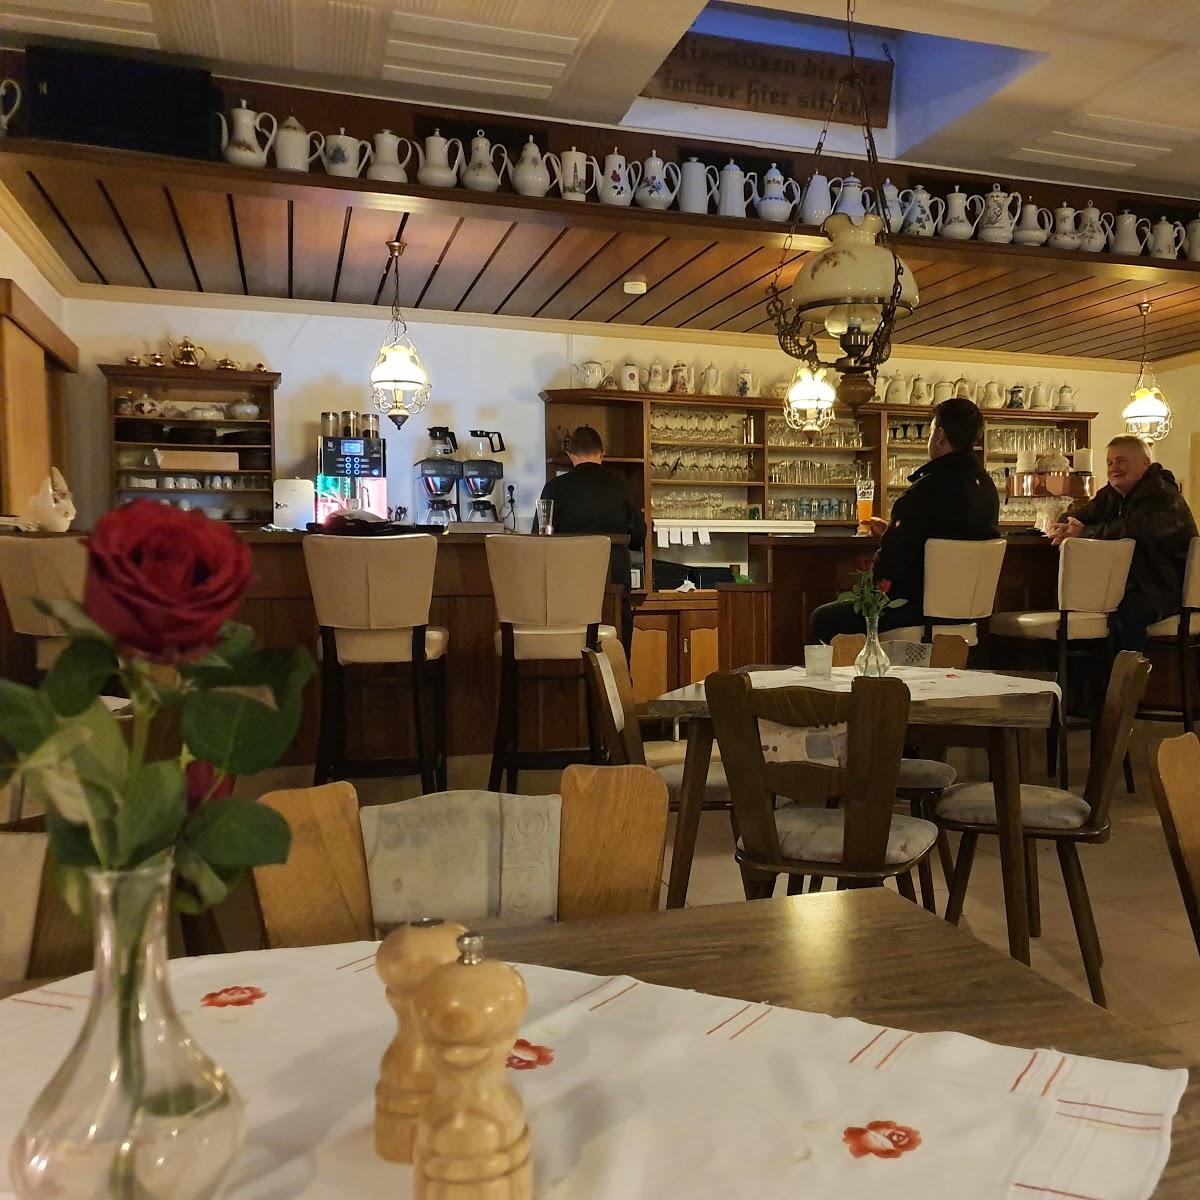 Restaurant "Landgasthof zum Heiligenberg" in  Sontra